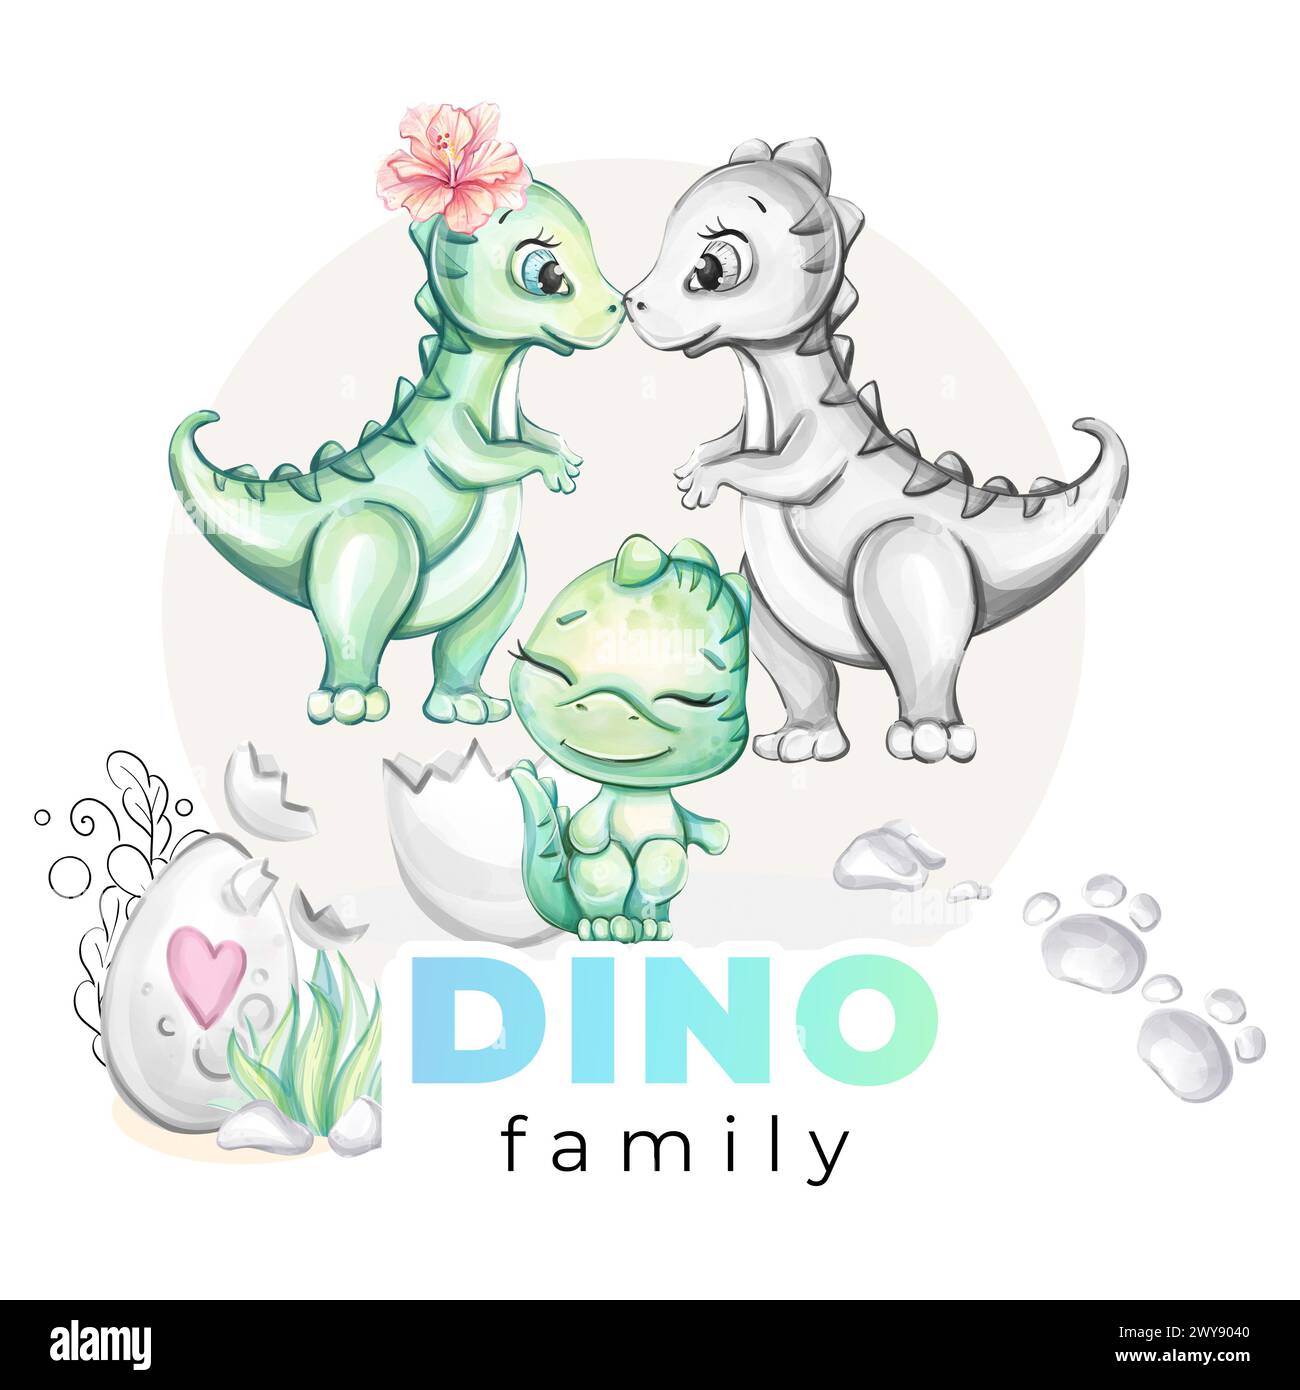 Aquarell-Baby-Dinosaurier. Mom und Dad mit Neewborn. Dino Family Clipart für Babydusche, Kinderzimmer, Einrichtung, Aufkleber, Drucke mit historischen Tieren Stockfoto